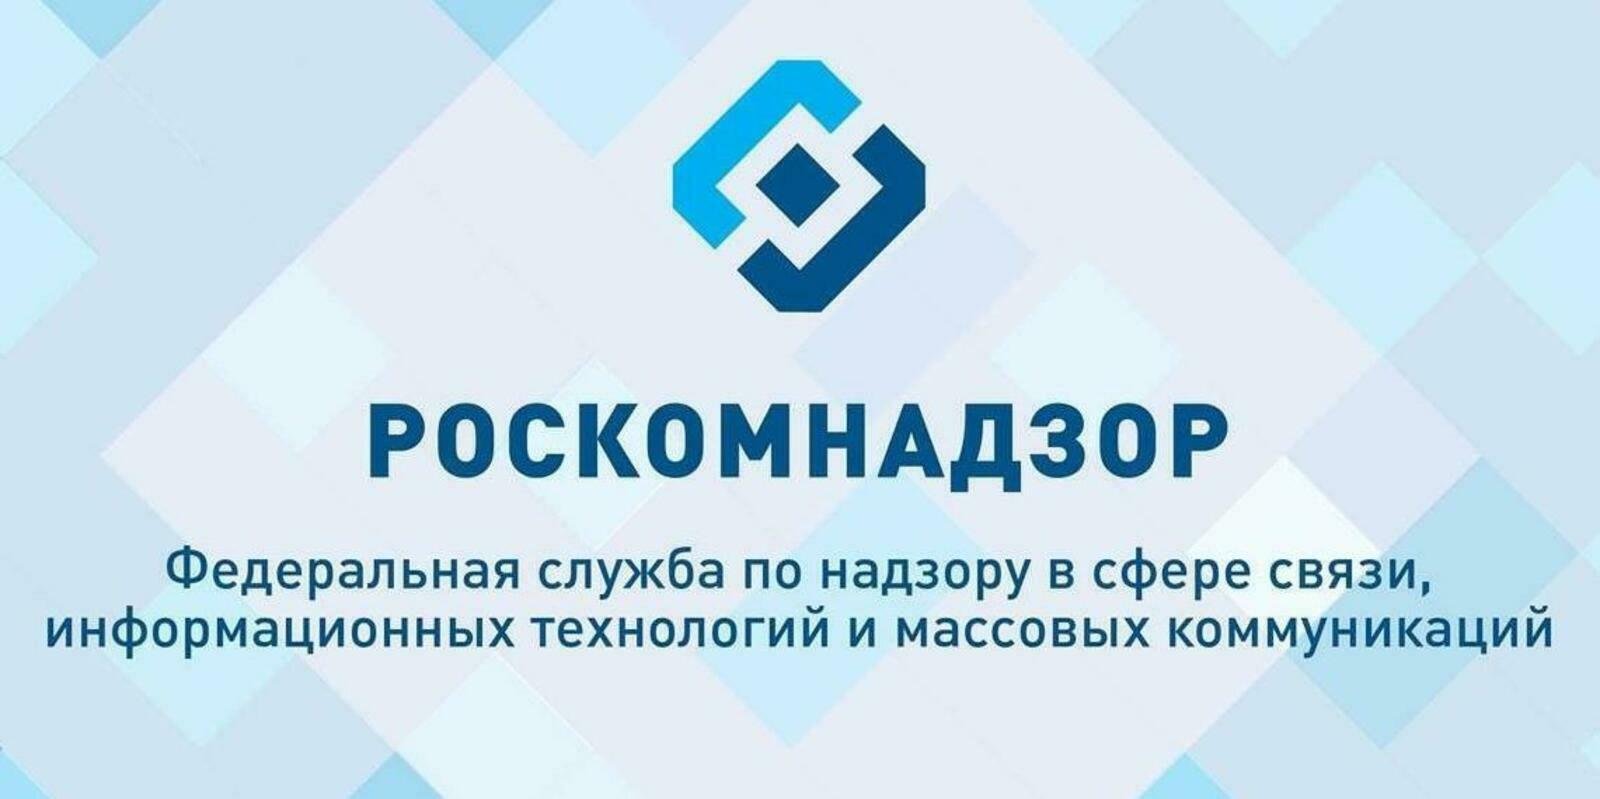 Управление Роскомнадзора по Республике Башкортостан информирует